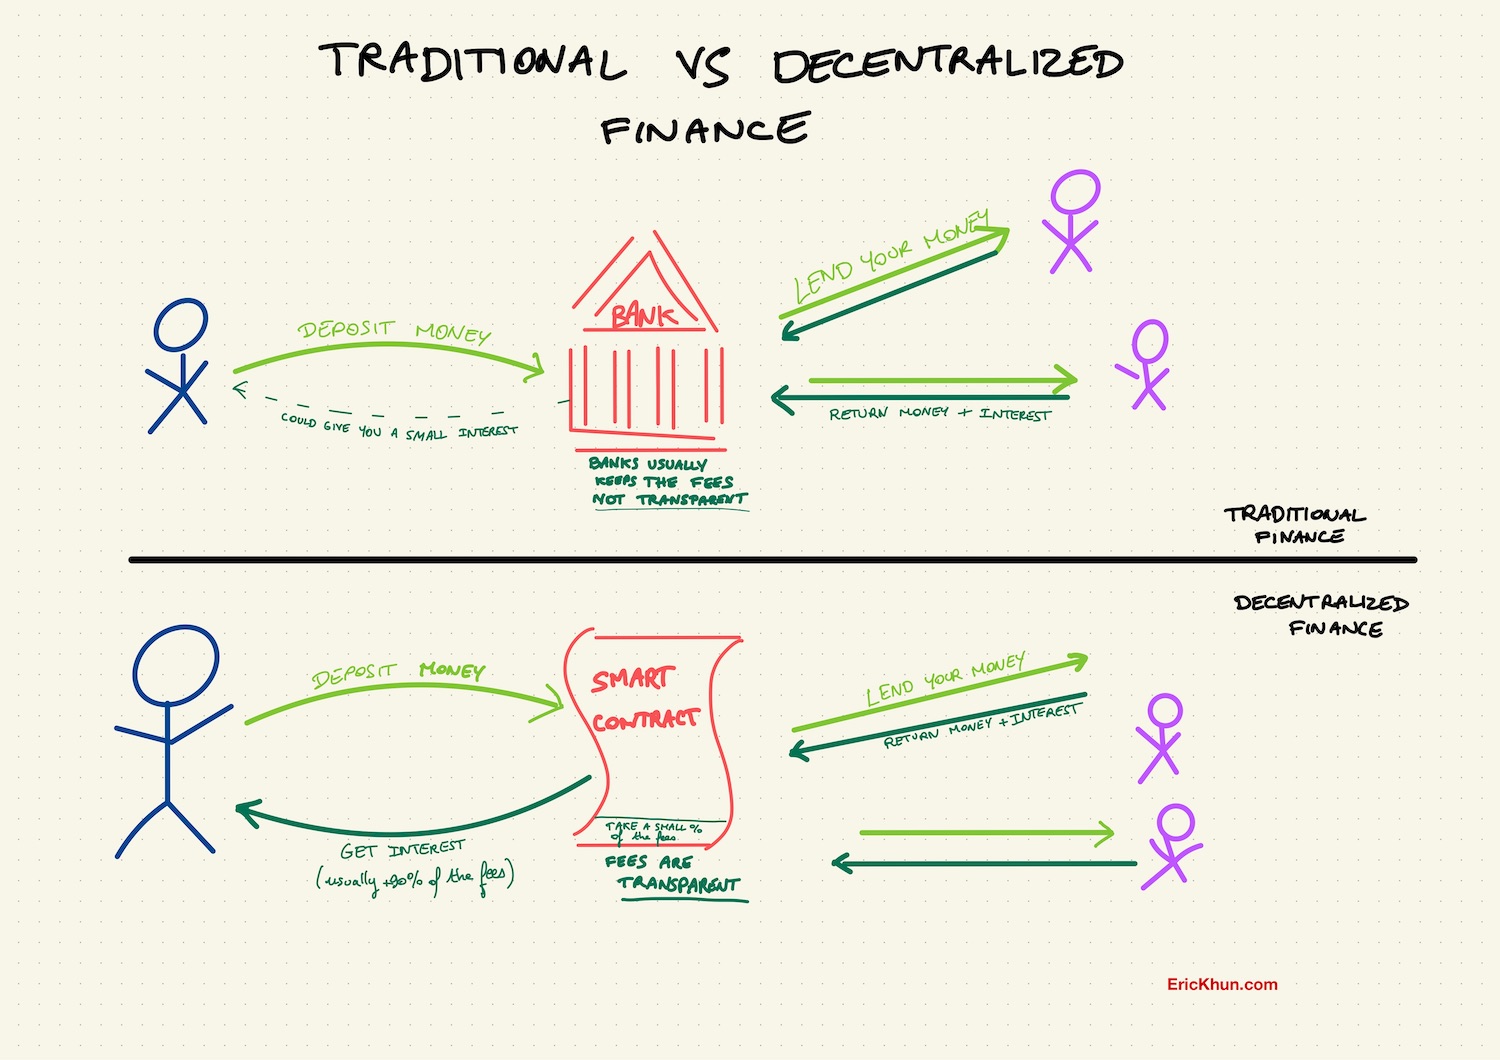 Lending Traditional banking vs defi